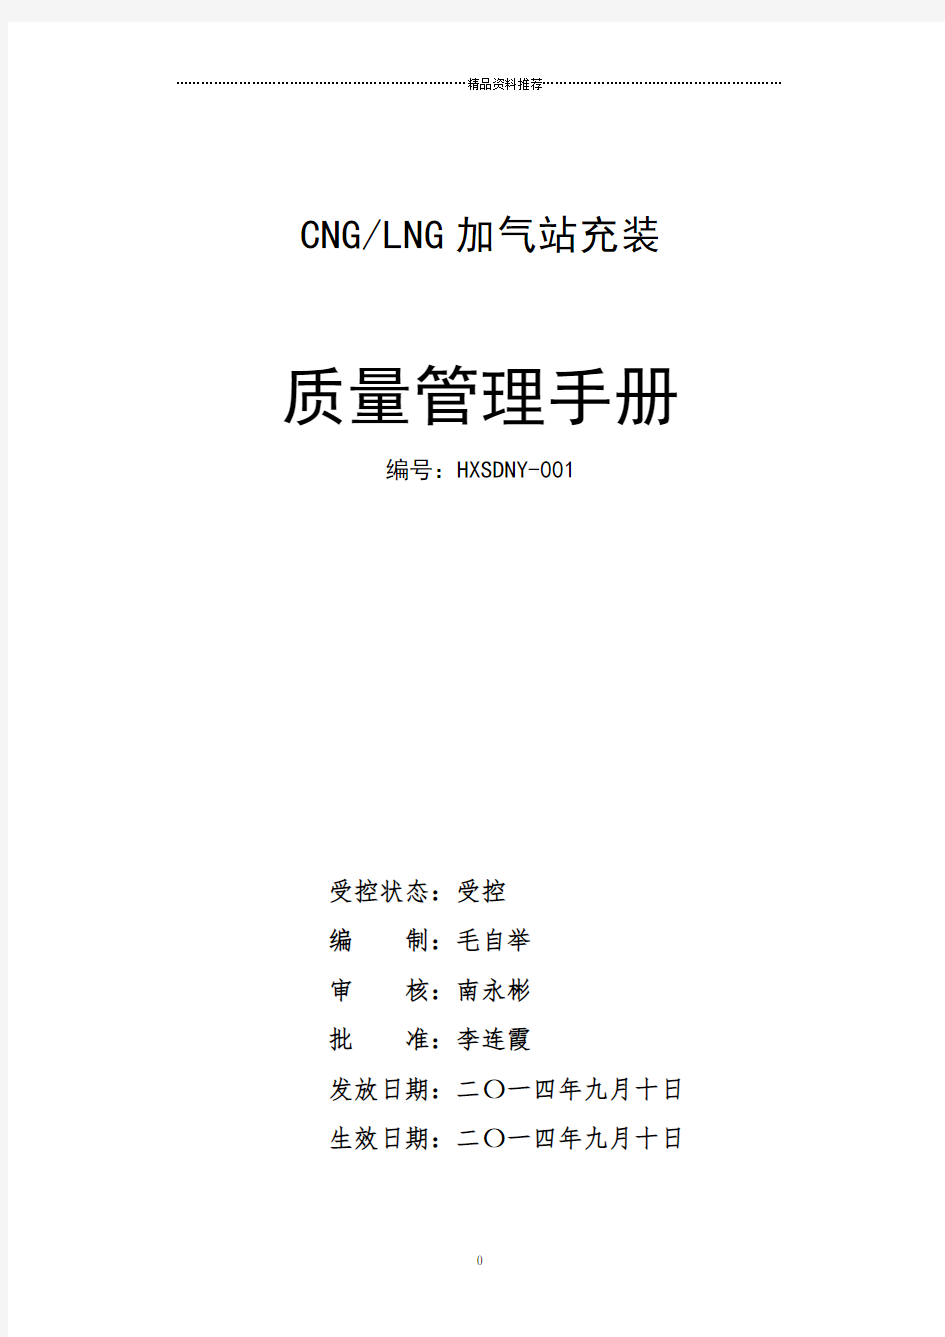 CNGLNG加气站质量手册文档